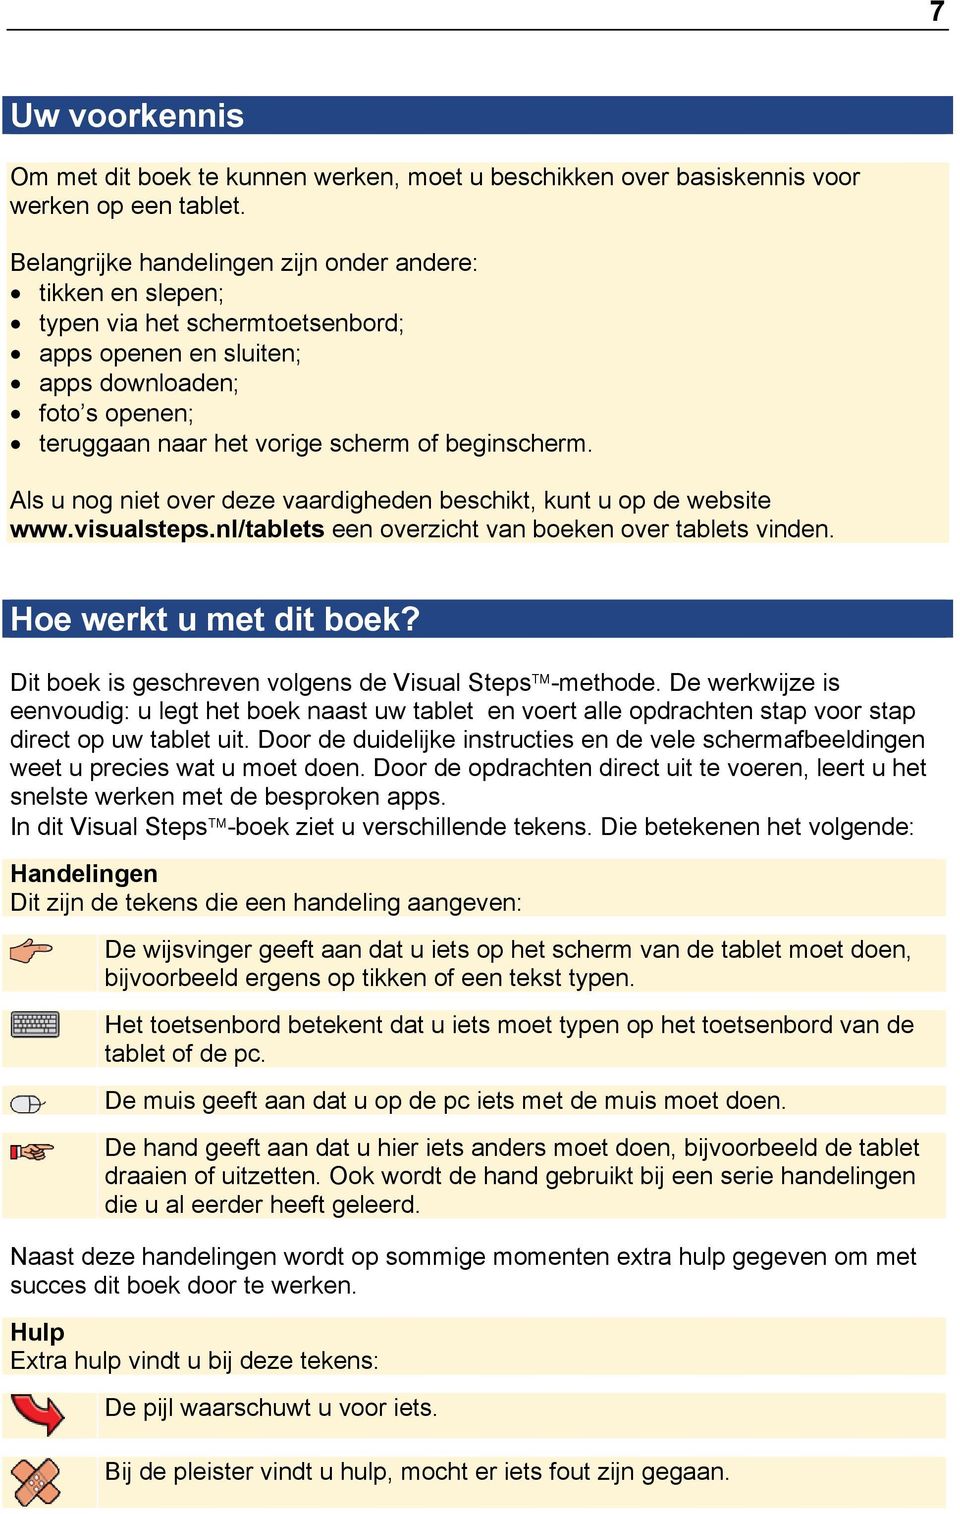 Als u nog niet over deze vaardigheden beschikt, kunt u op de website www.visualsteps.nl/tablets een overzicht van boeken over tablets vinden. Hoe werkt u met dit boek?